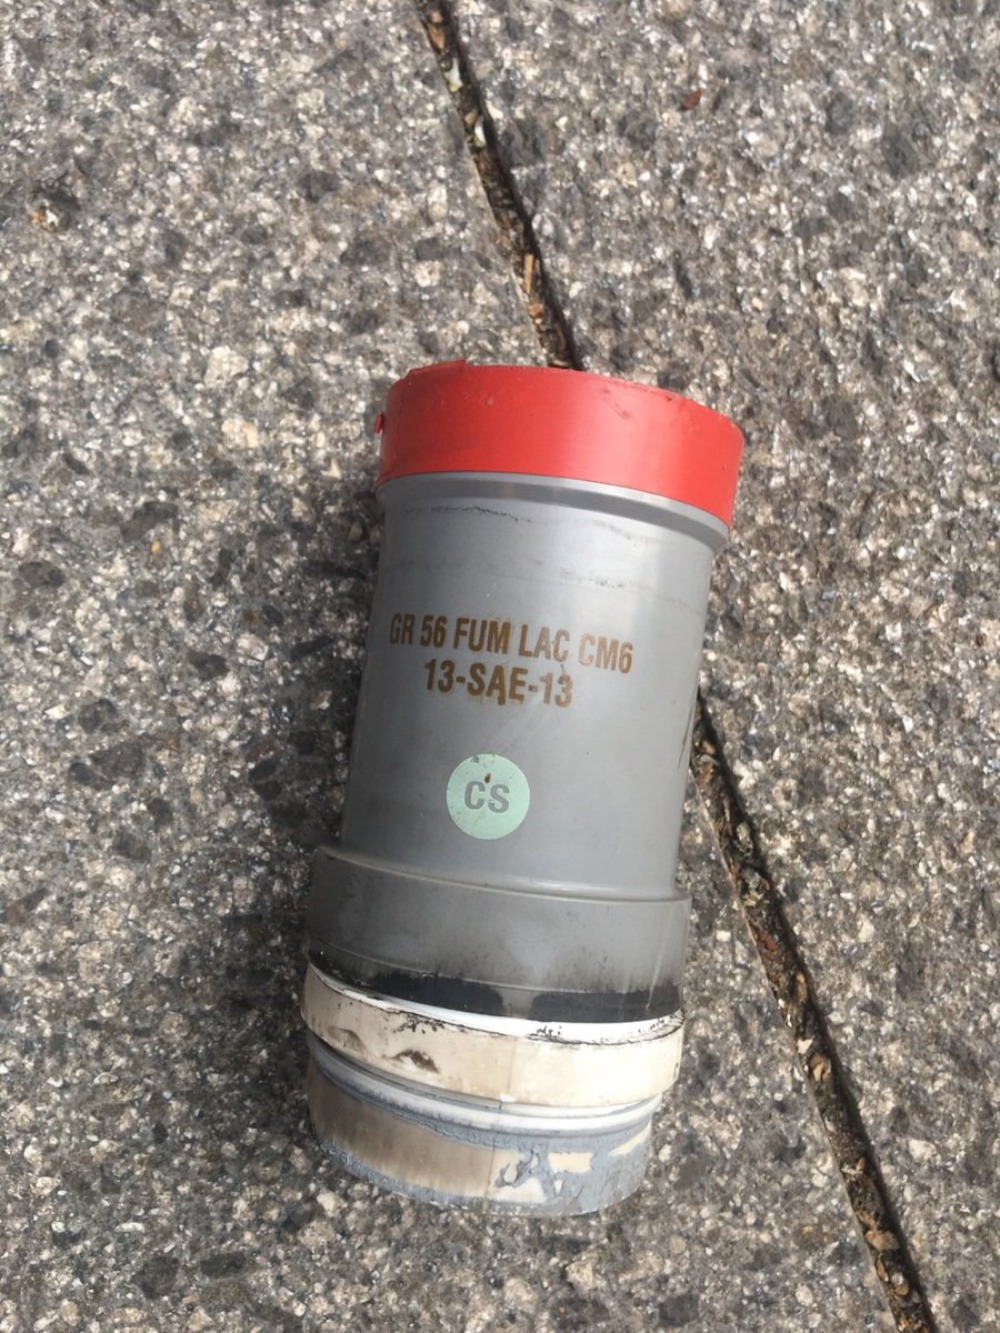 Une grenade de gaz lacrymogène CM6 abandonnée après l’incident du 18 octobre sur la place Riad el-Solh dans le centre-ville de Beyrouth (MEE/Kareem Chehayeb)